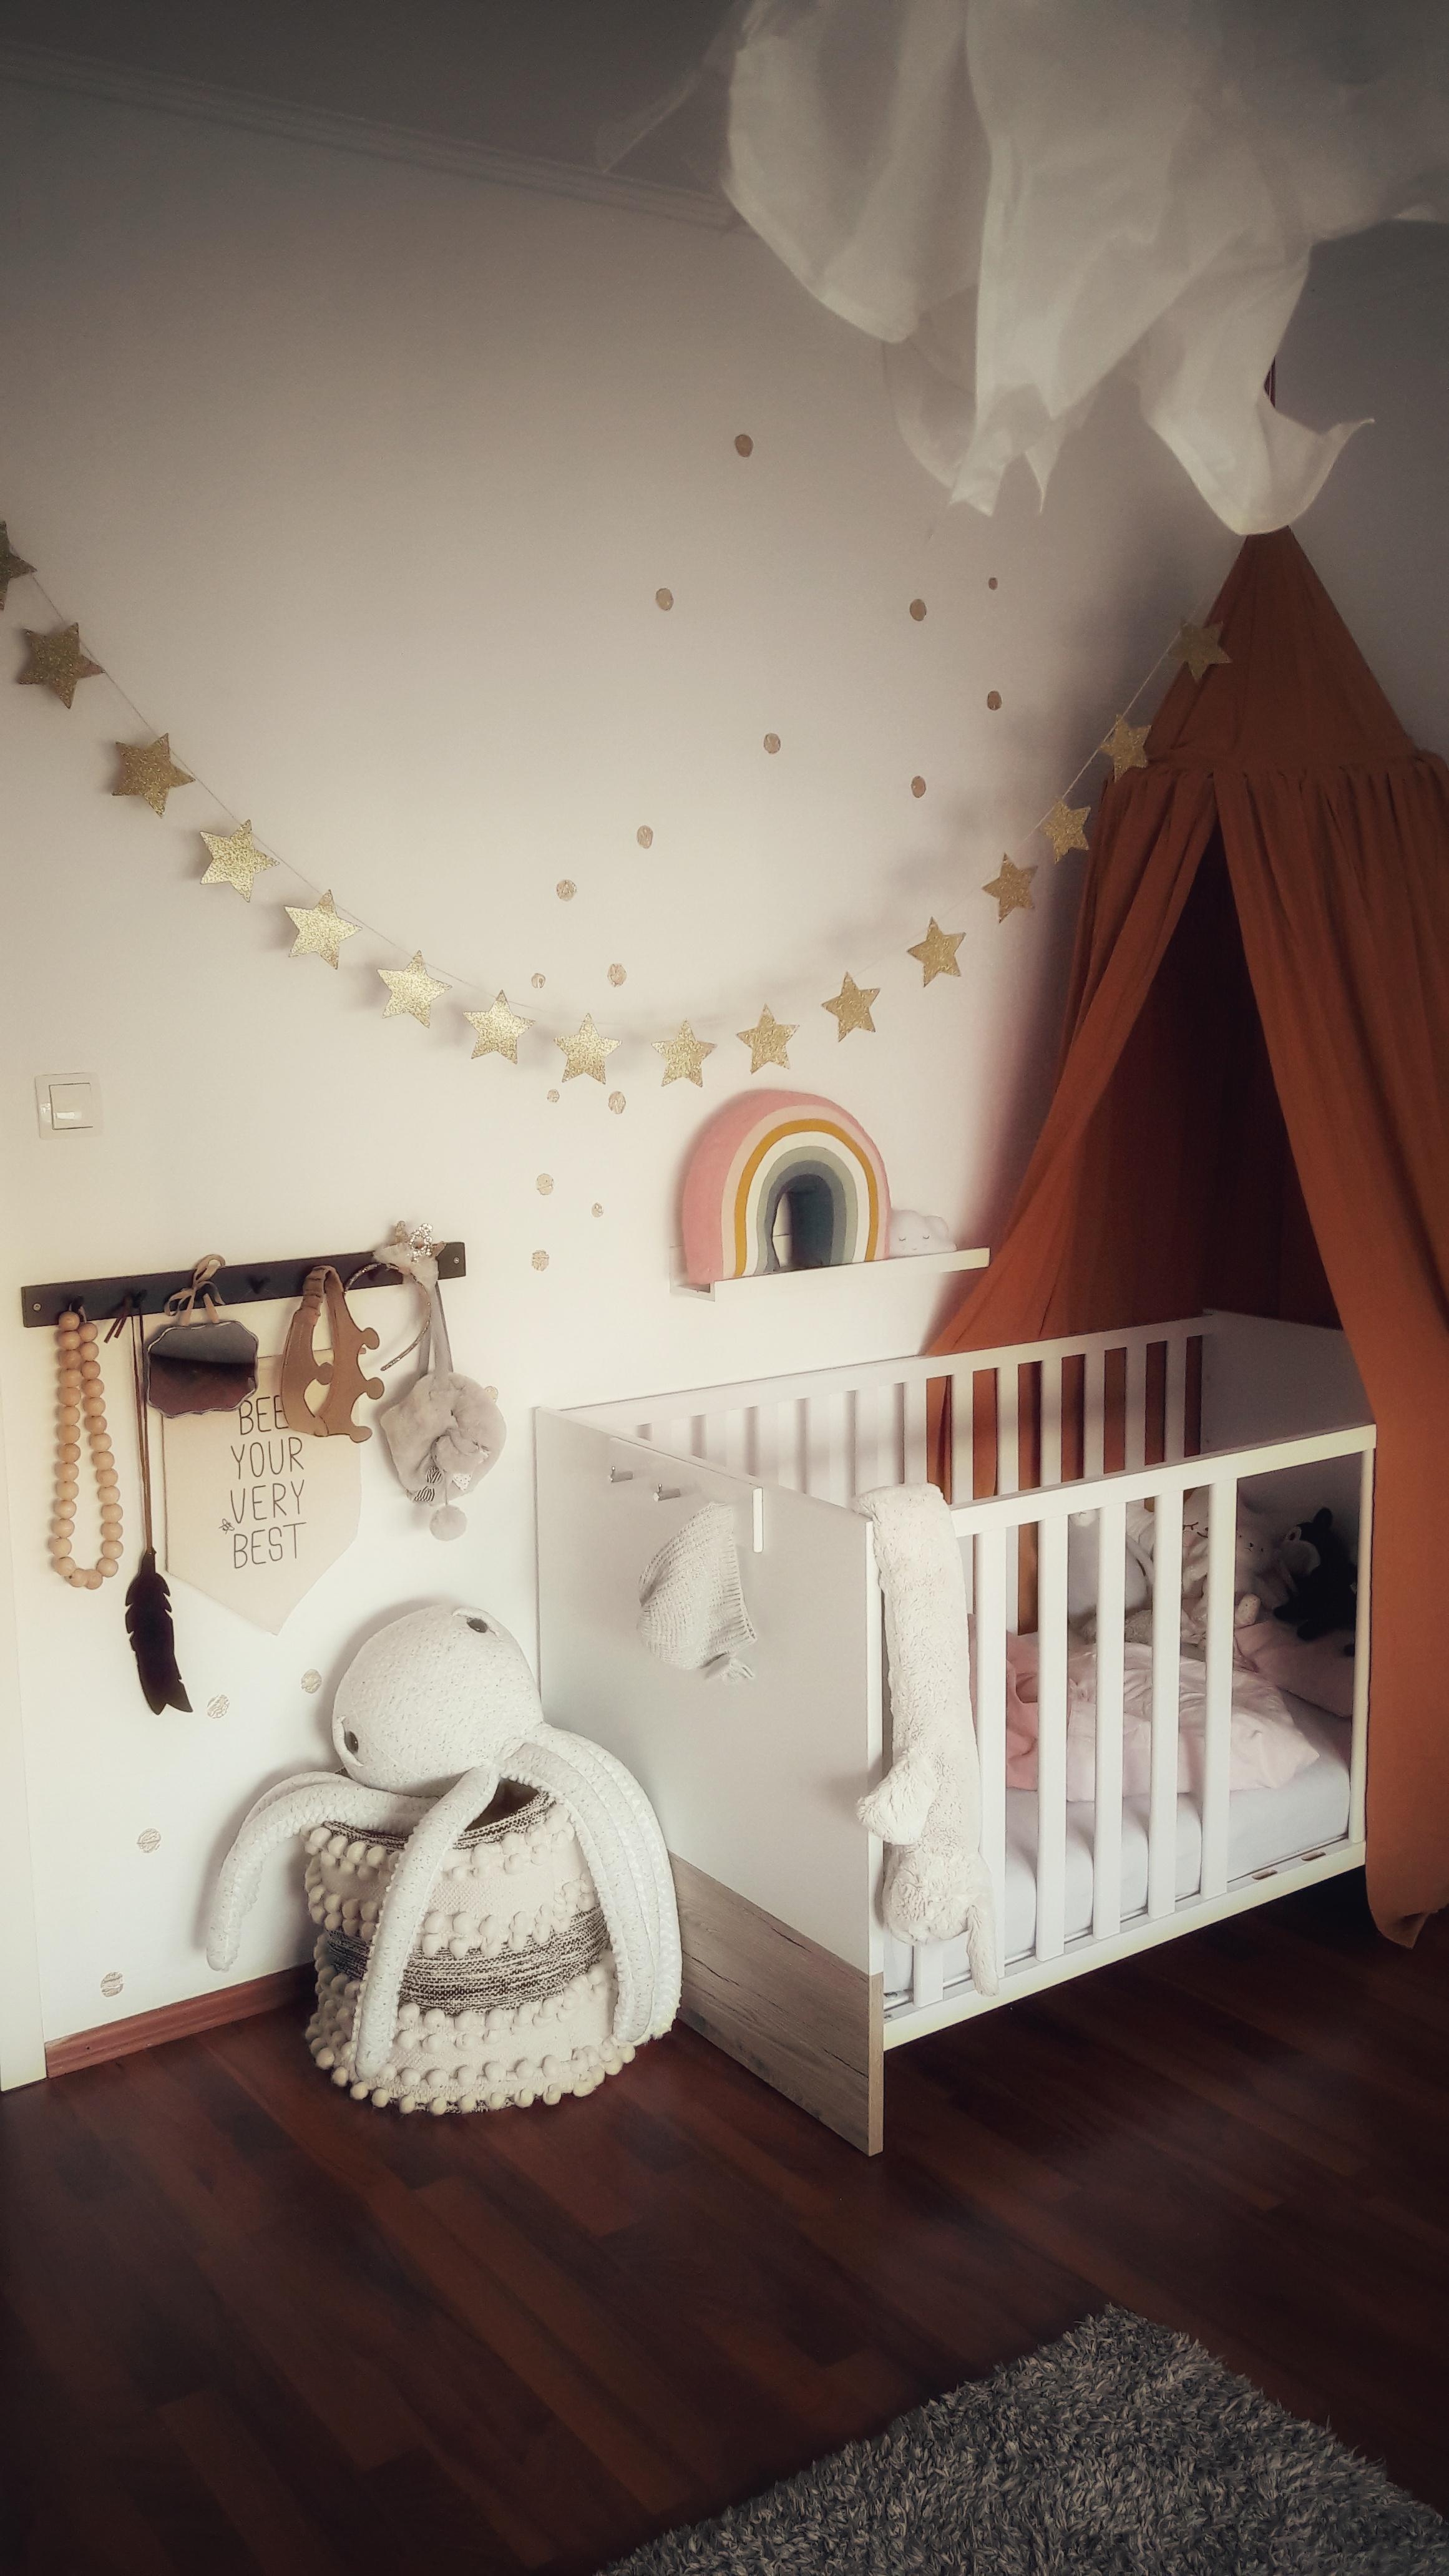 Schlaf schön mein Engelchen ❤❤❤
#Kidsroom #Baldachin #Glitzer #Regenbogen #Garderobe #Krone #Gold #rosa #Dreamland #